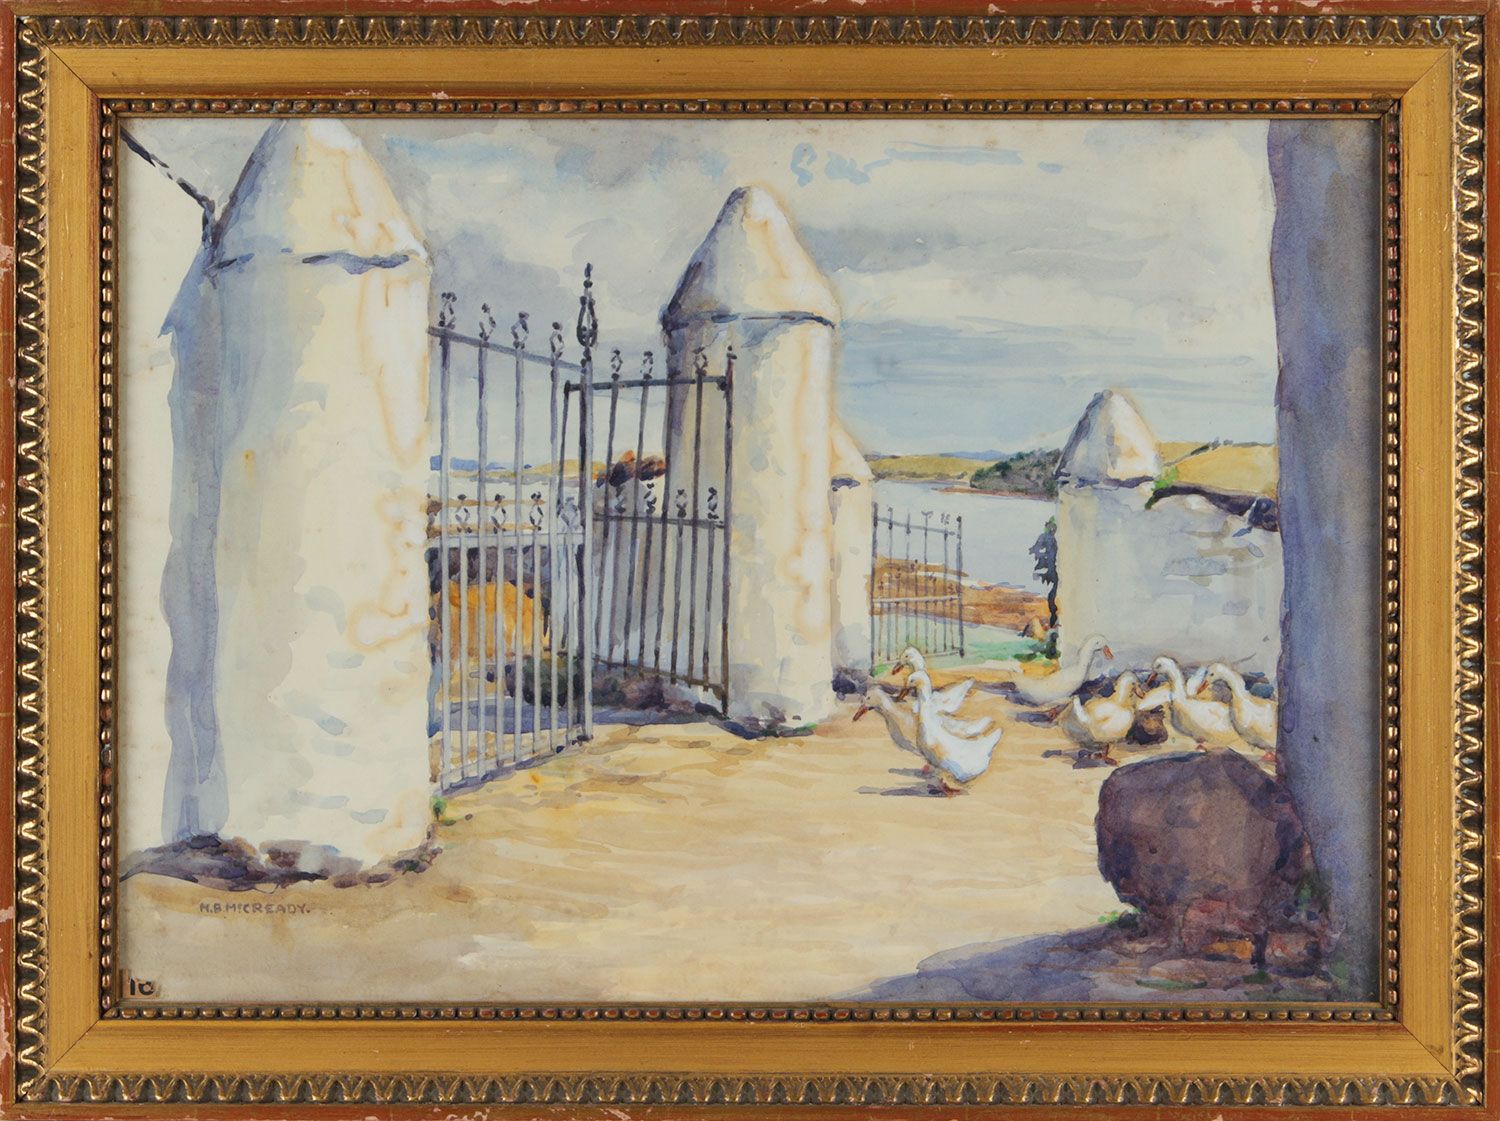 STEWART'S FARM, RINGDUFFERIN (LOOKING TOWARDS ISLAND MORE) by Ellen Brown Workman McCready at Ross's Online Art Auctions